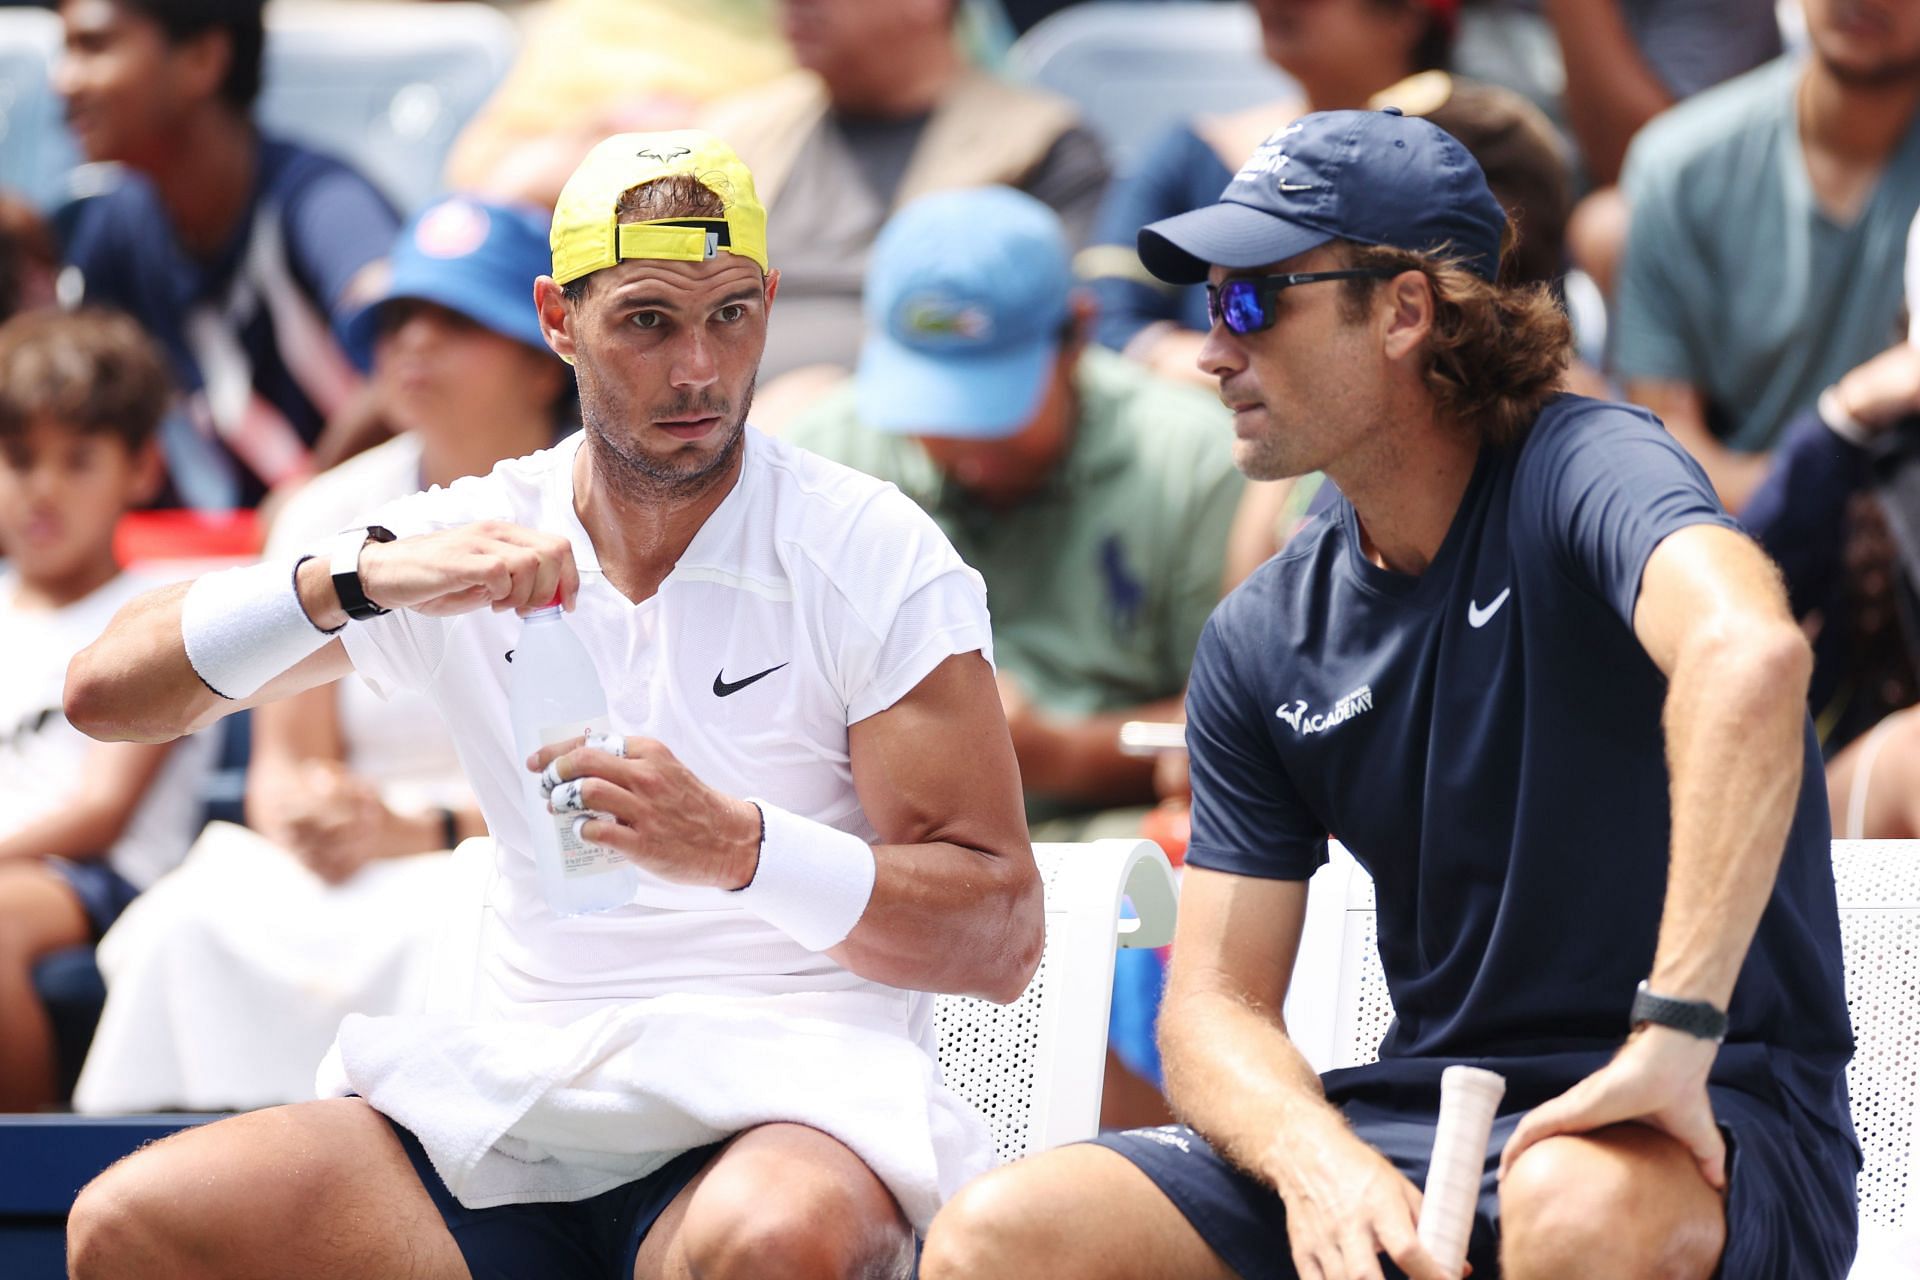 Rafael Nadal and Carlos Moya at the 2022 US Open.